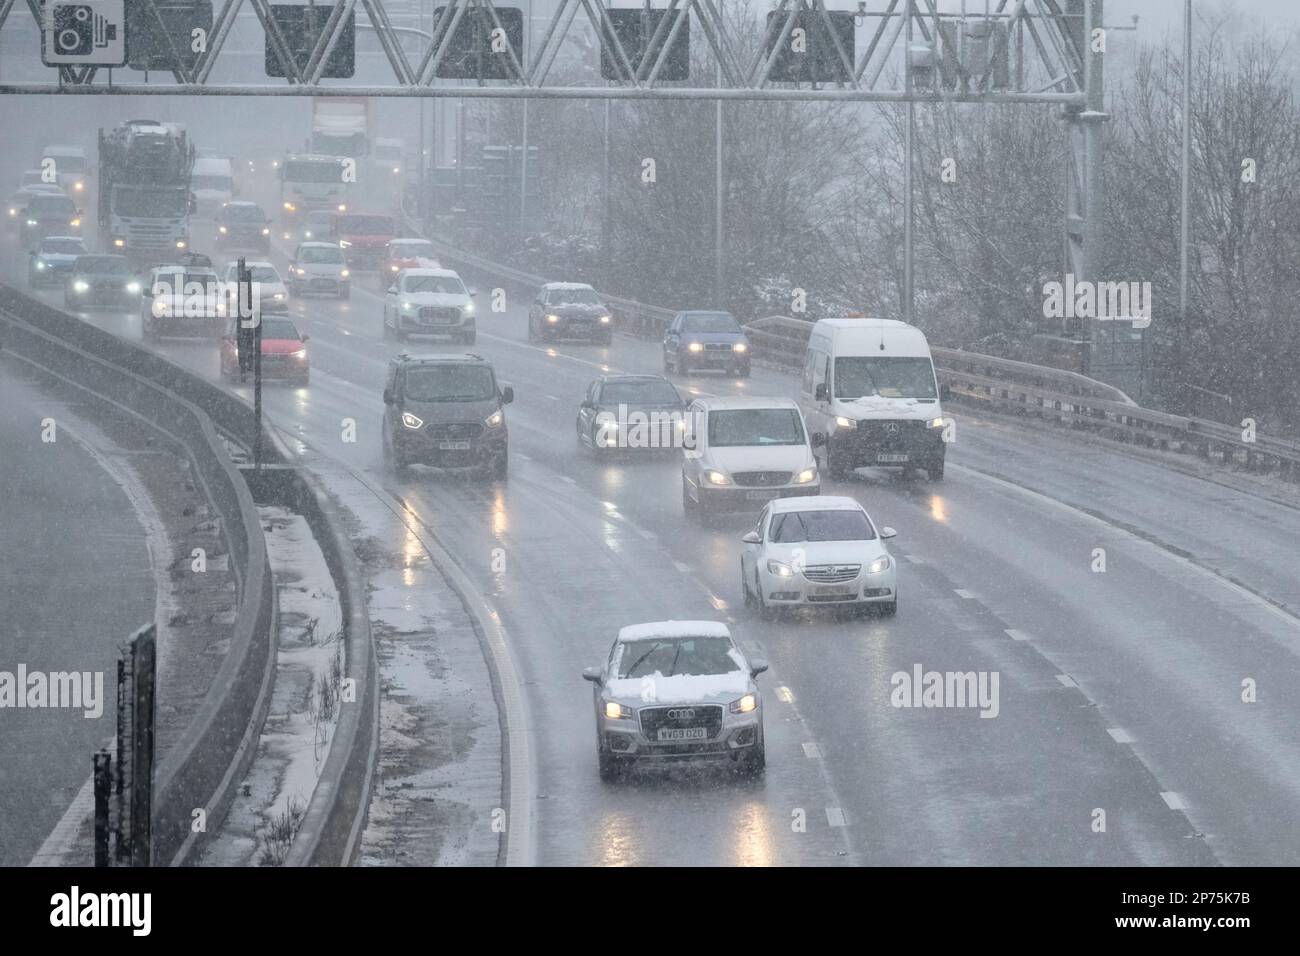 Bristol, Regno Unito. 8th Mar, 2023. Le condizioni dell'autostrada M5 a nord di Bristol tra gli incroci 16 e 17 sono scarse. La neve e lo slittino rendono difficili le condizioni durante il viaggio mattutino. Credit: JMF News/Alamy Live News Foto Stock